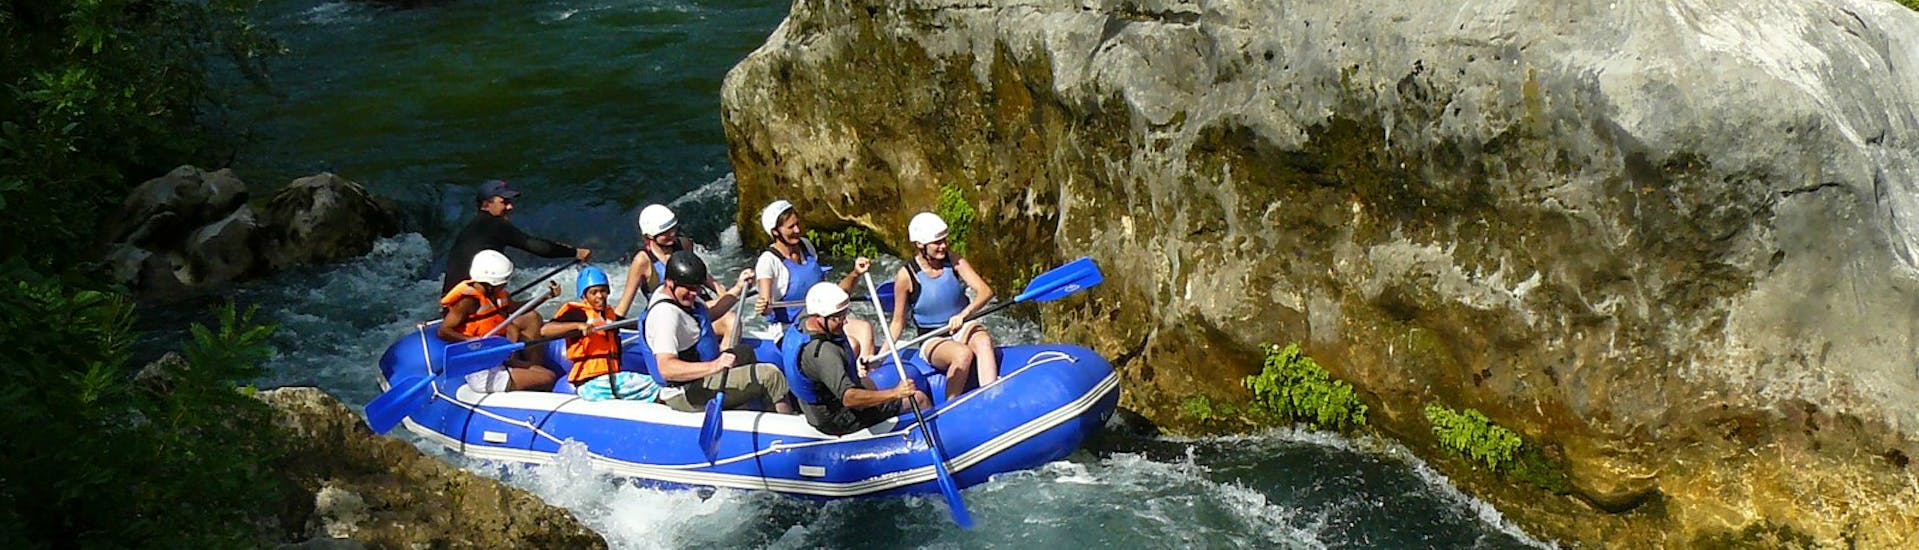 Un groupe de rafting de Croatia Rafting maîtrisant la descente d'une petite chute d'eau lors de leur circuit de Rafting classique sur la belle rivière Centina.